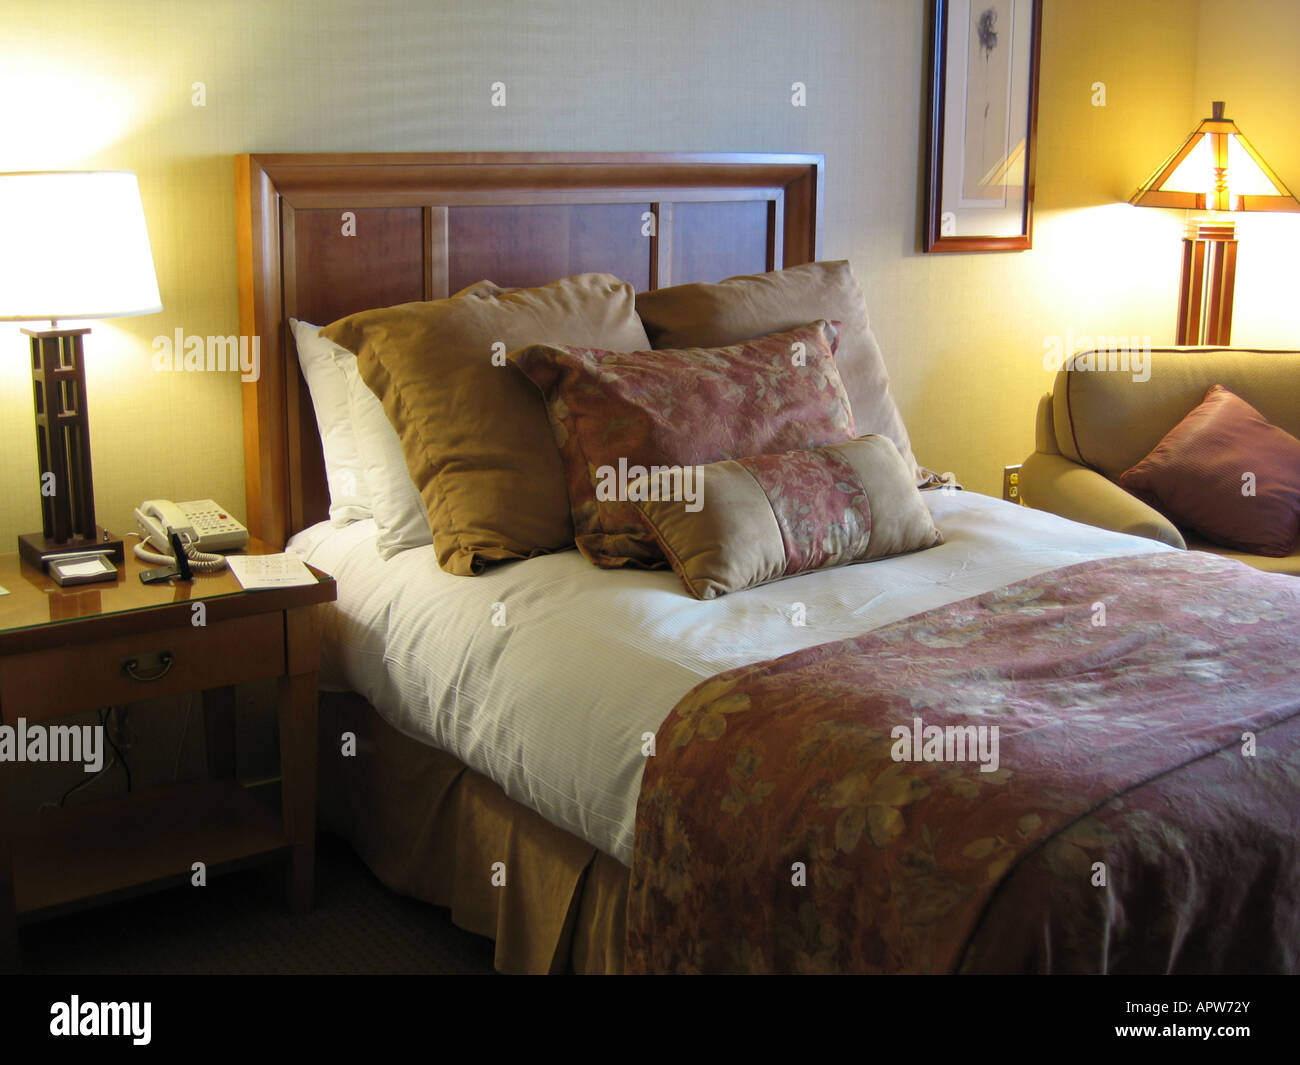 Luxus-Hotelzimmer in USA mit Queen-Size Bett und mehrere Kissen  Stockfotografie - Alamy